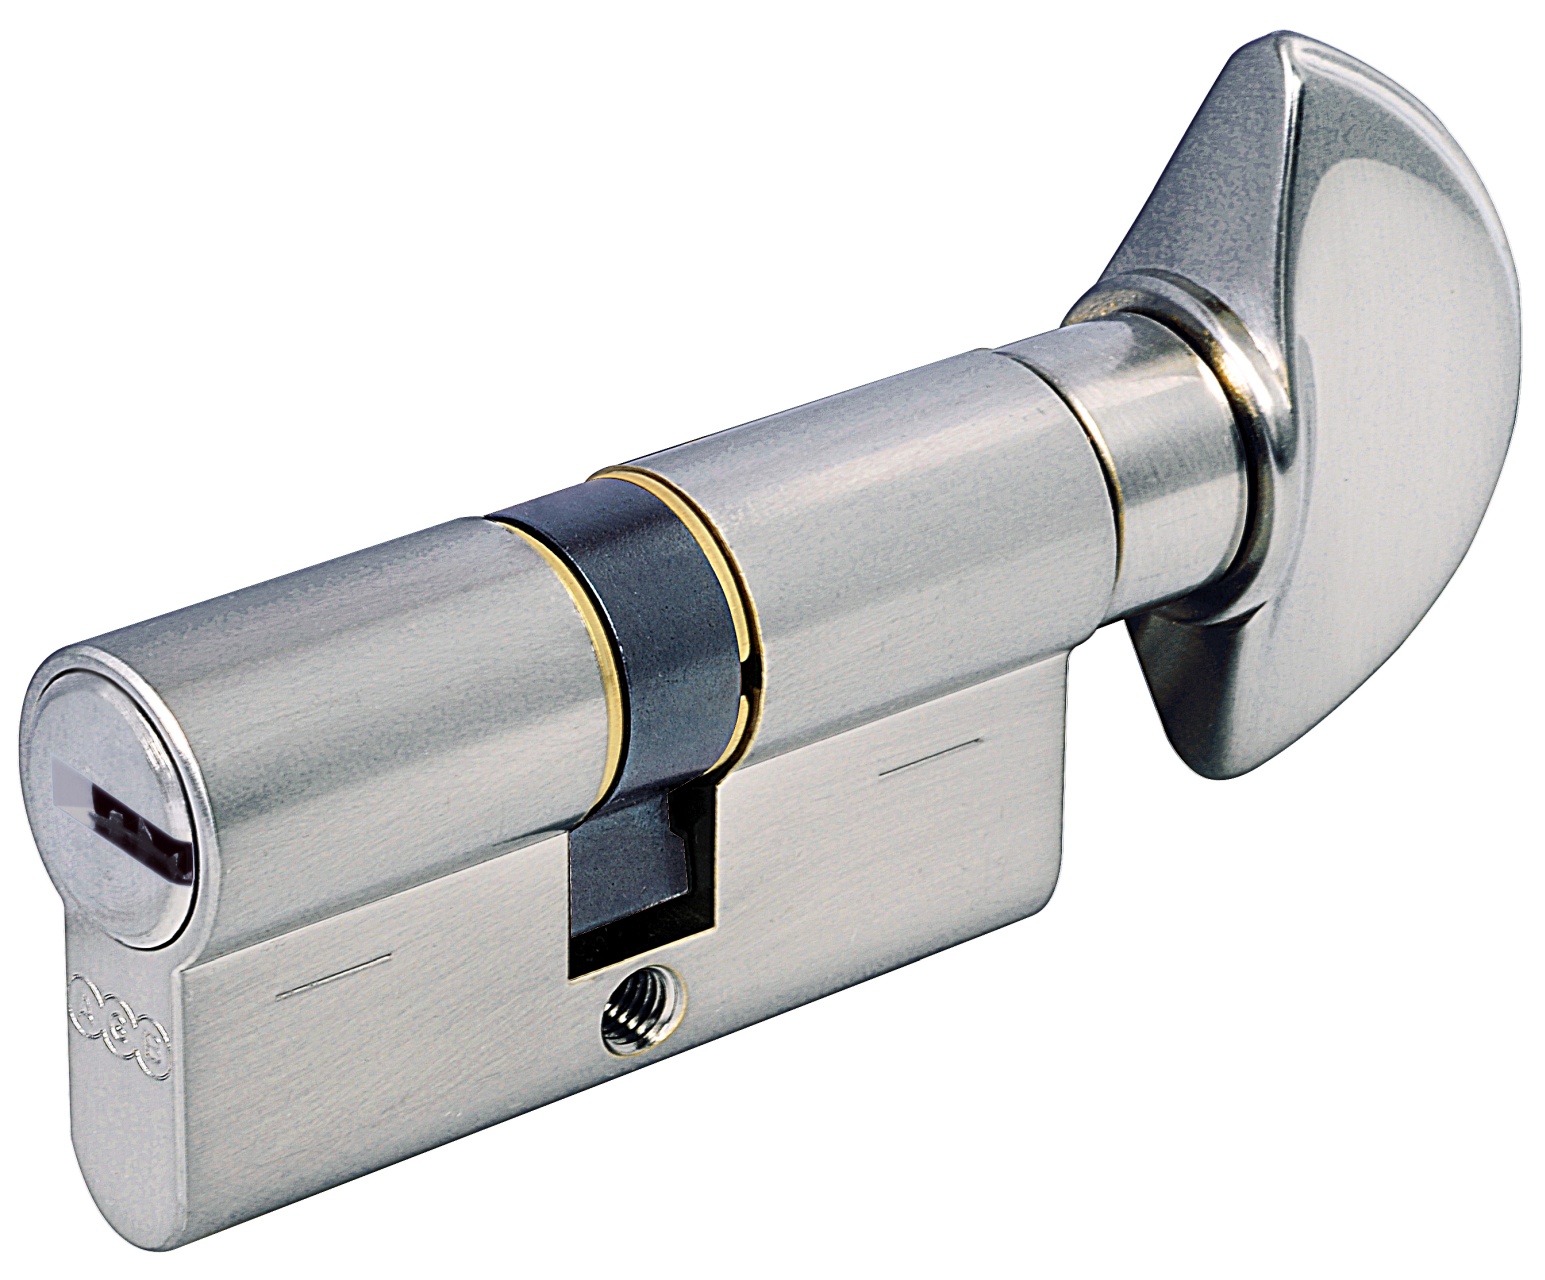 AGB -  Cilindro SCUDO 5000 PS frizionato anti bamping con chiave e pomolo - col. NICHELATO OPACO - lunghezza 75 - misura P-40-10-25